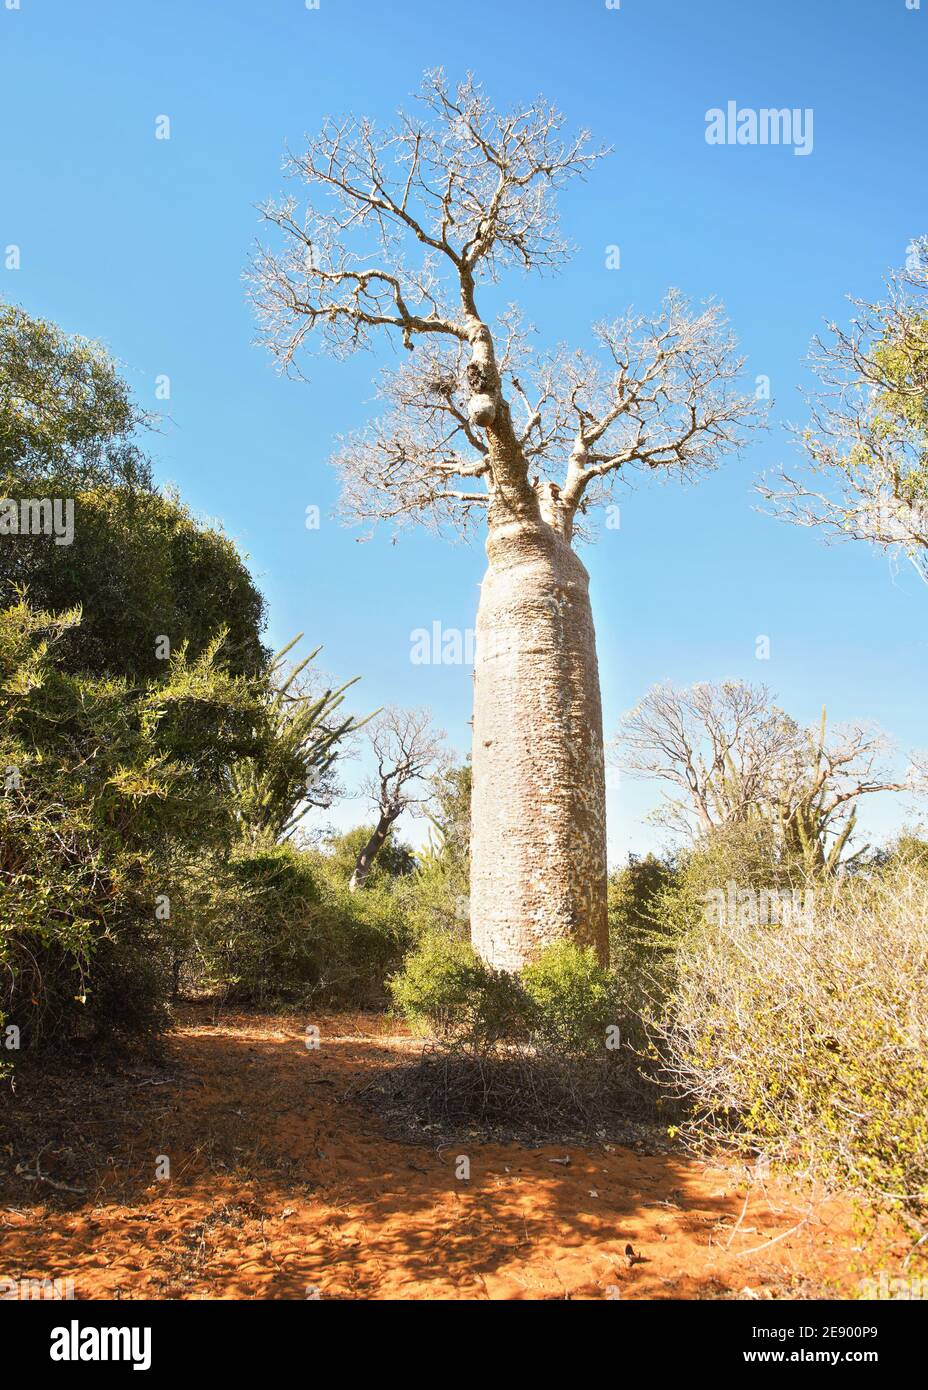 Forêt avec petits baobabs et poulpes, buissons et herbe poussant sur un sol rouge et poussiéreux Banque D'Images